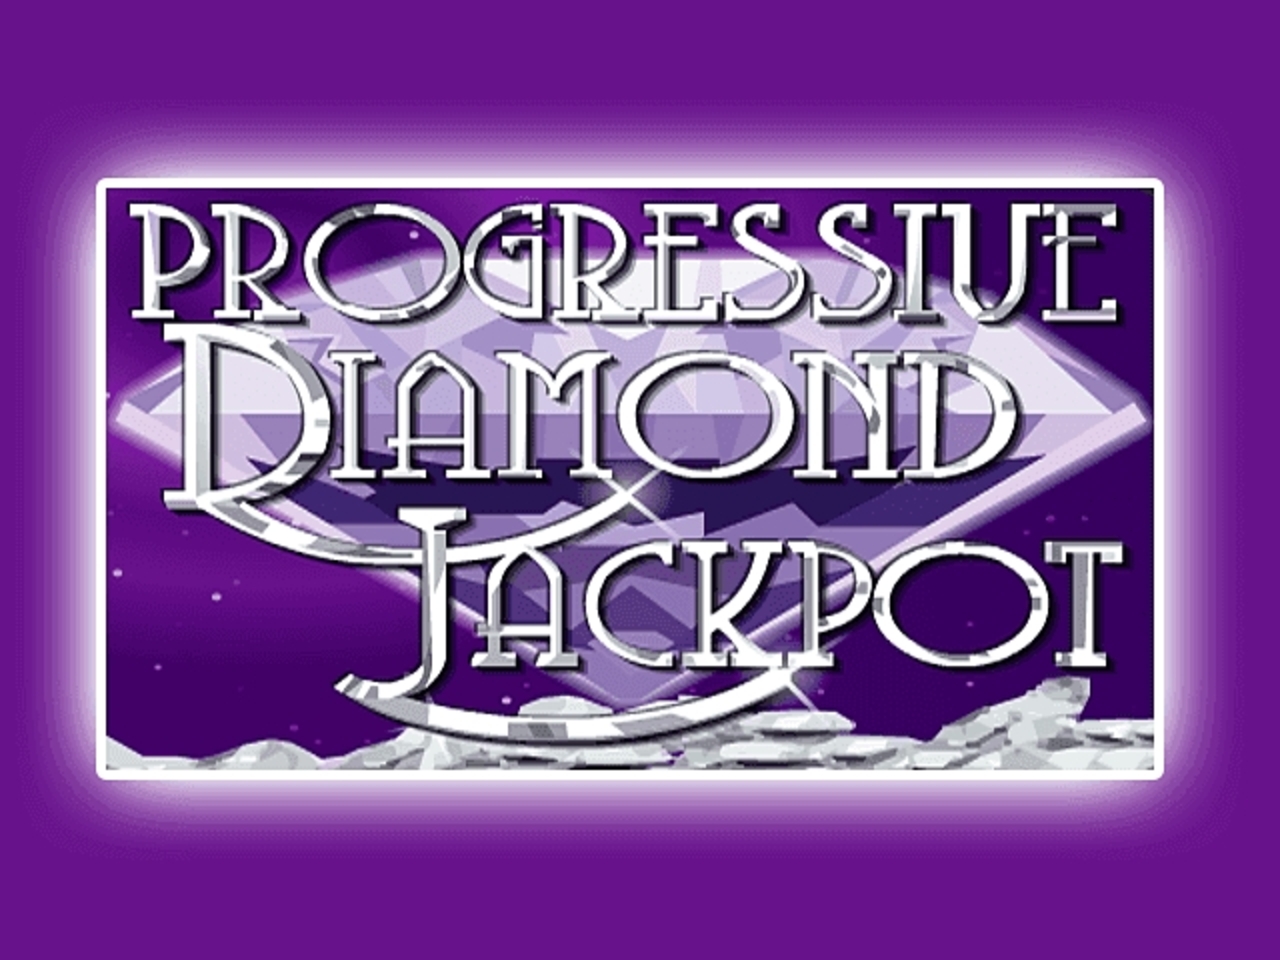 Diamond Jackpot